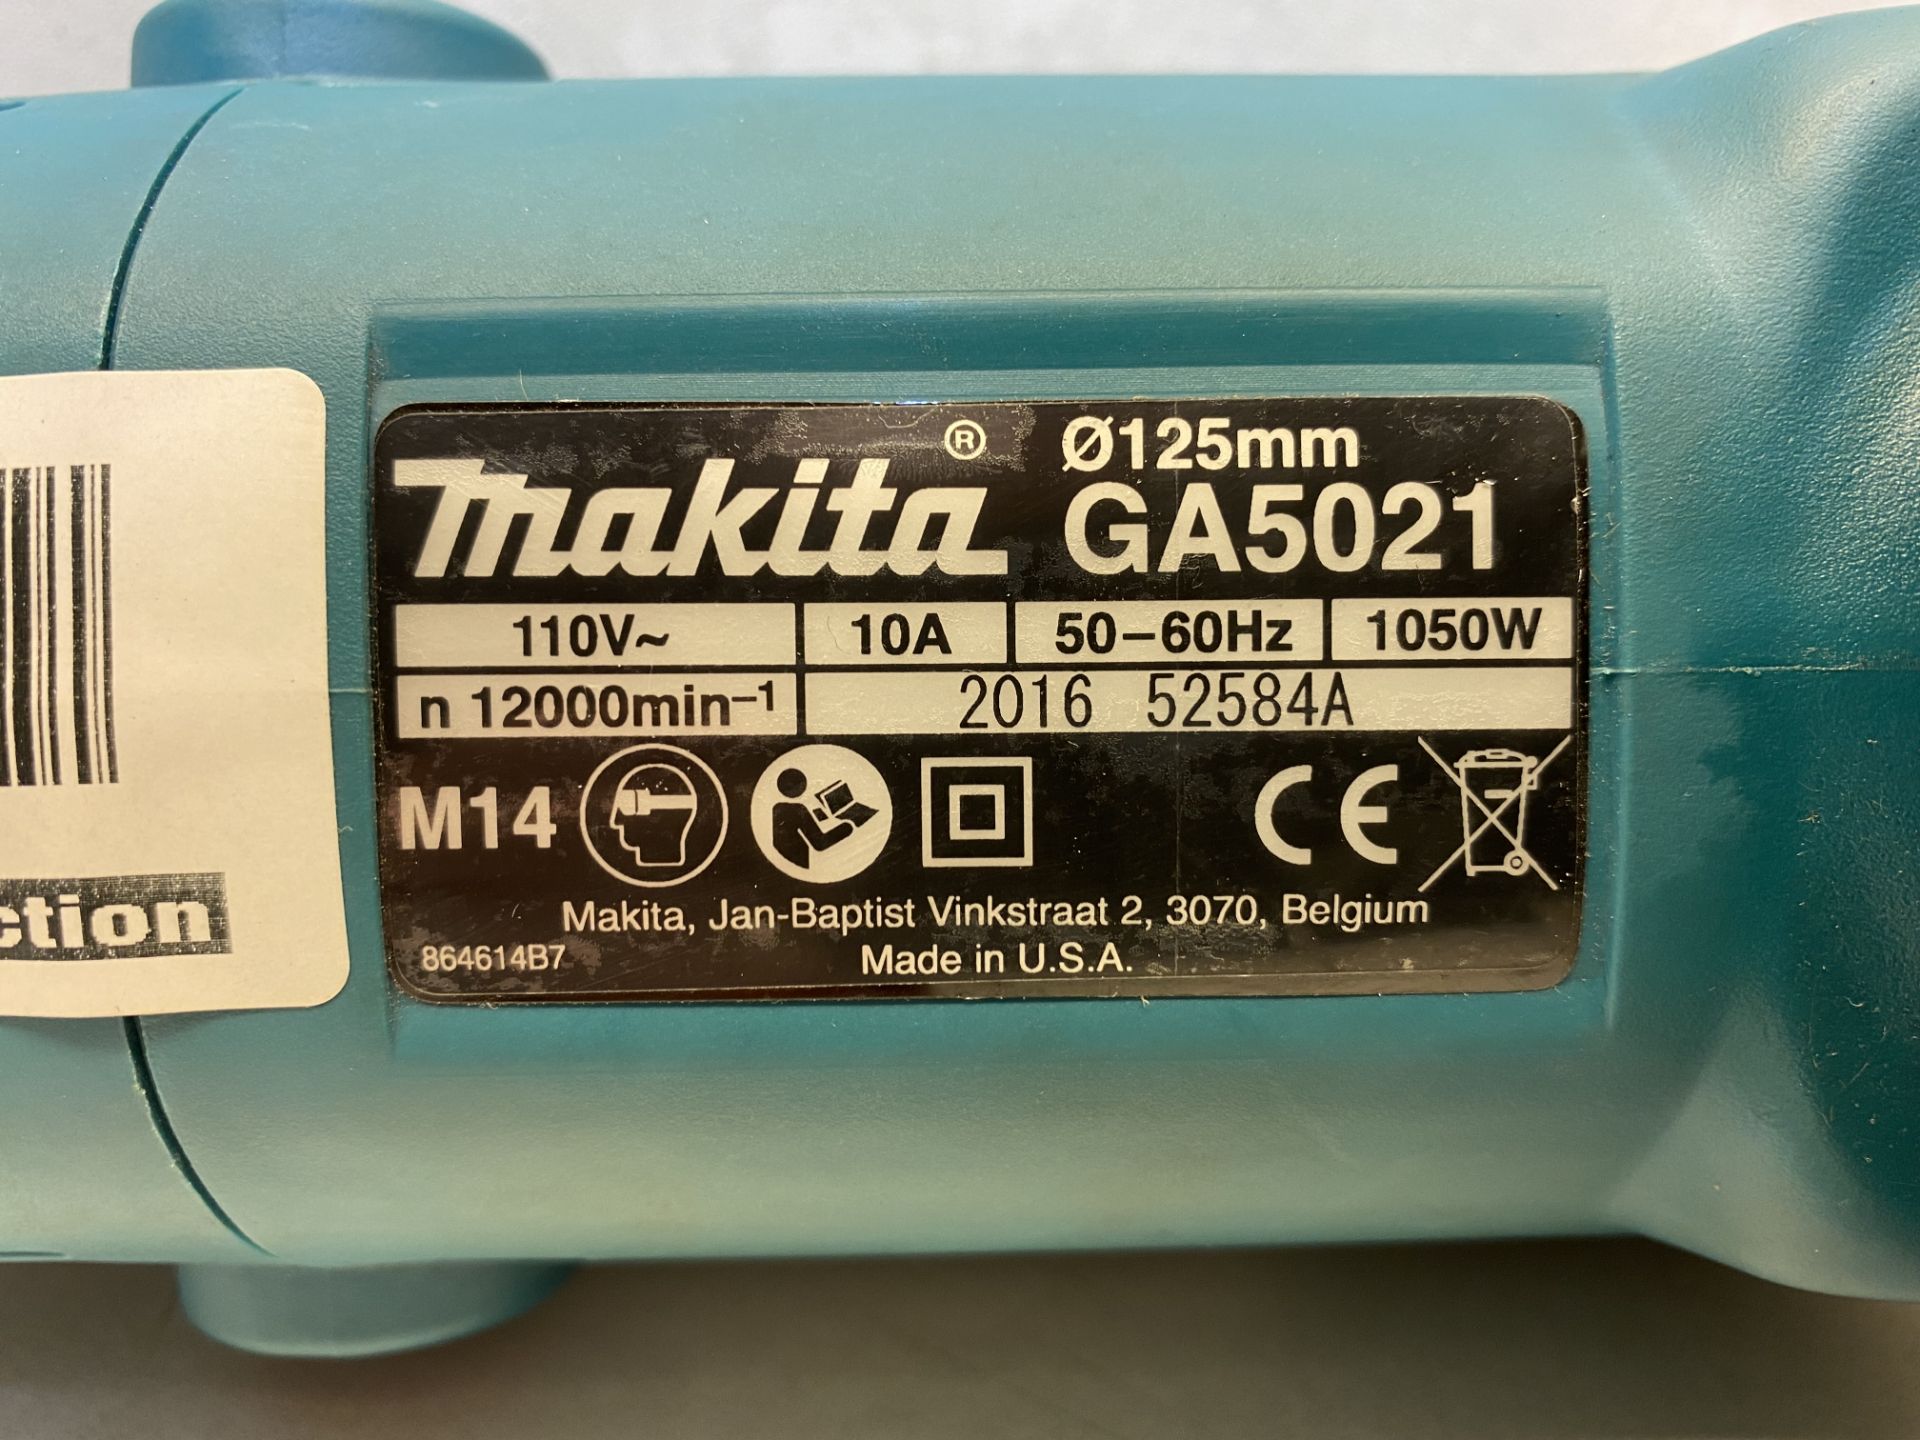 MAKITA GA5021 110v Angle grinder - 5" (125mm) - Image 3 of 4